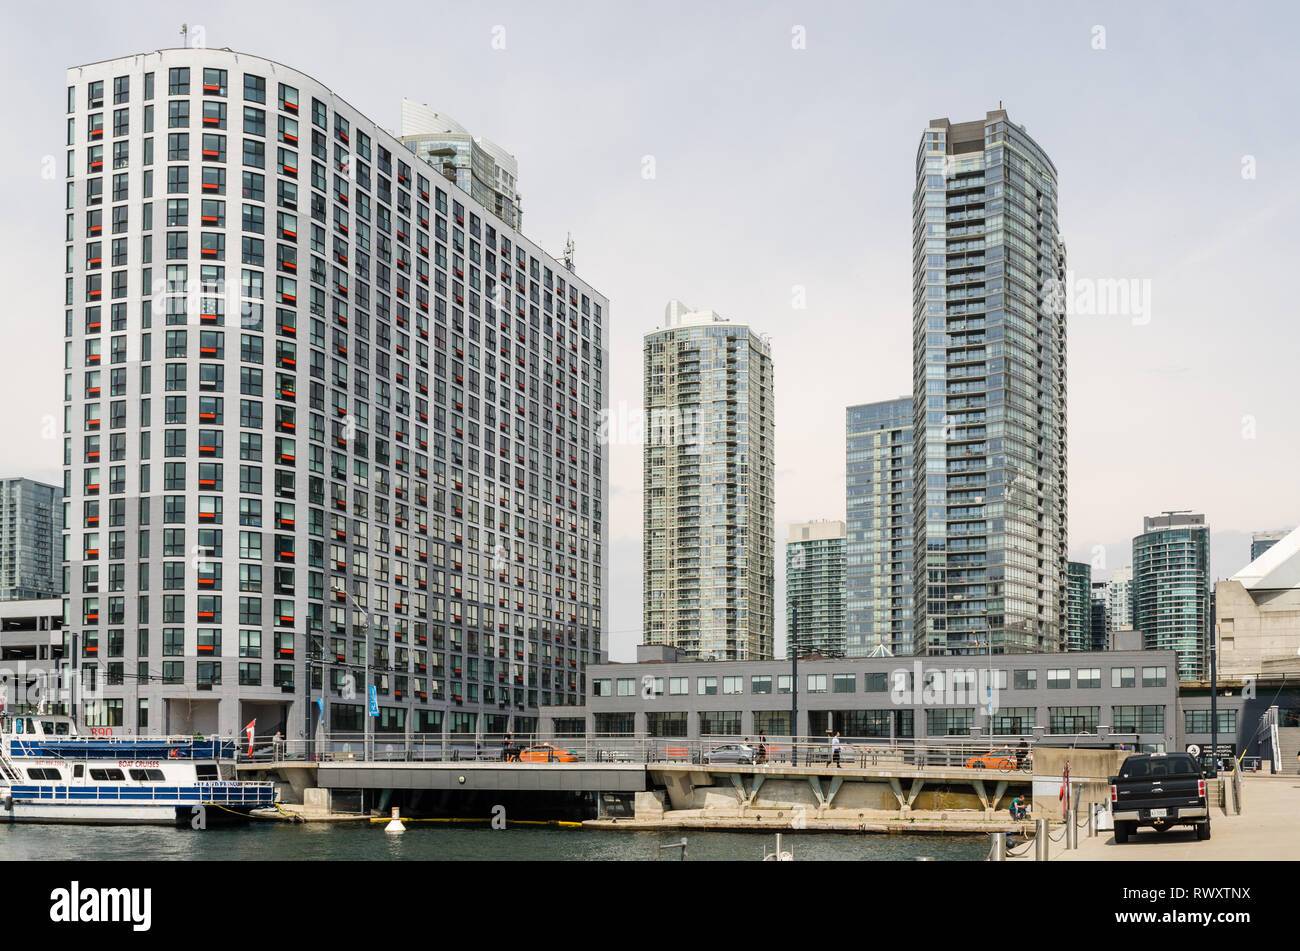 Les immeubles de verre et d'acier au secteur riverain de Toronto, Canada Banque D'Images